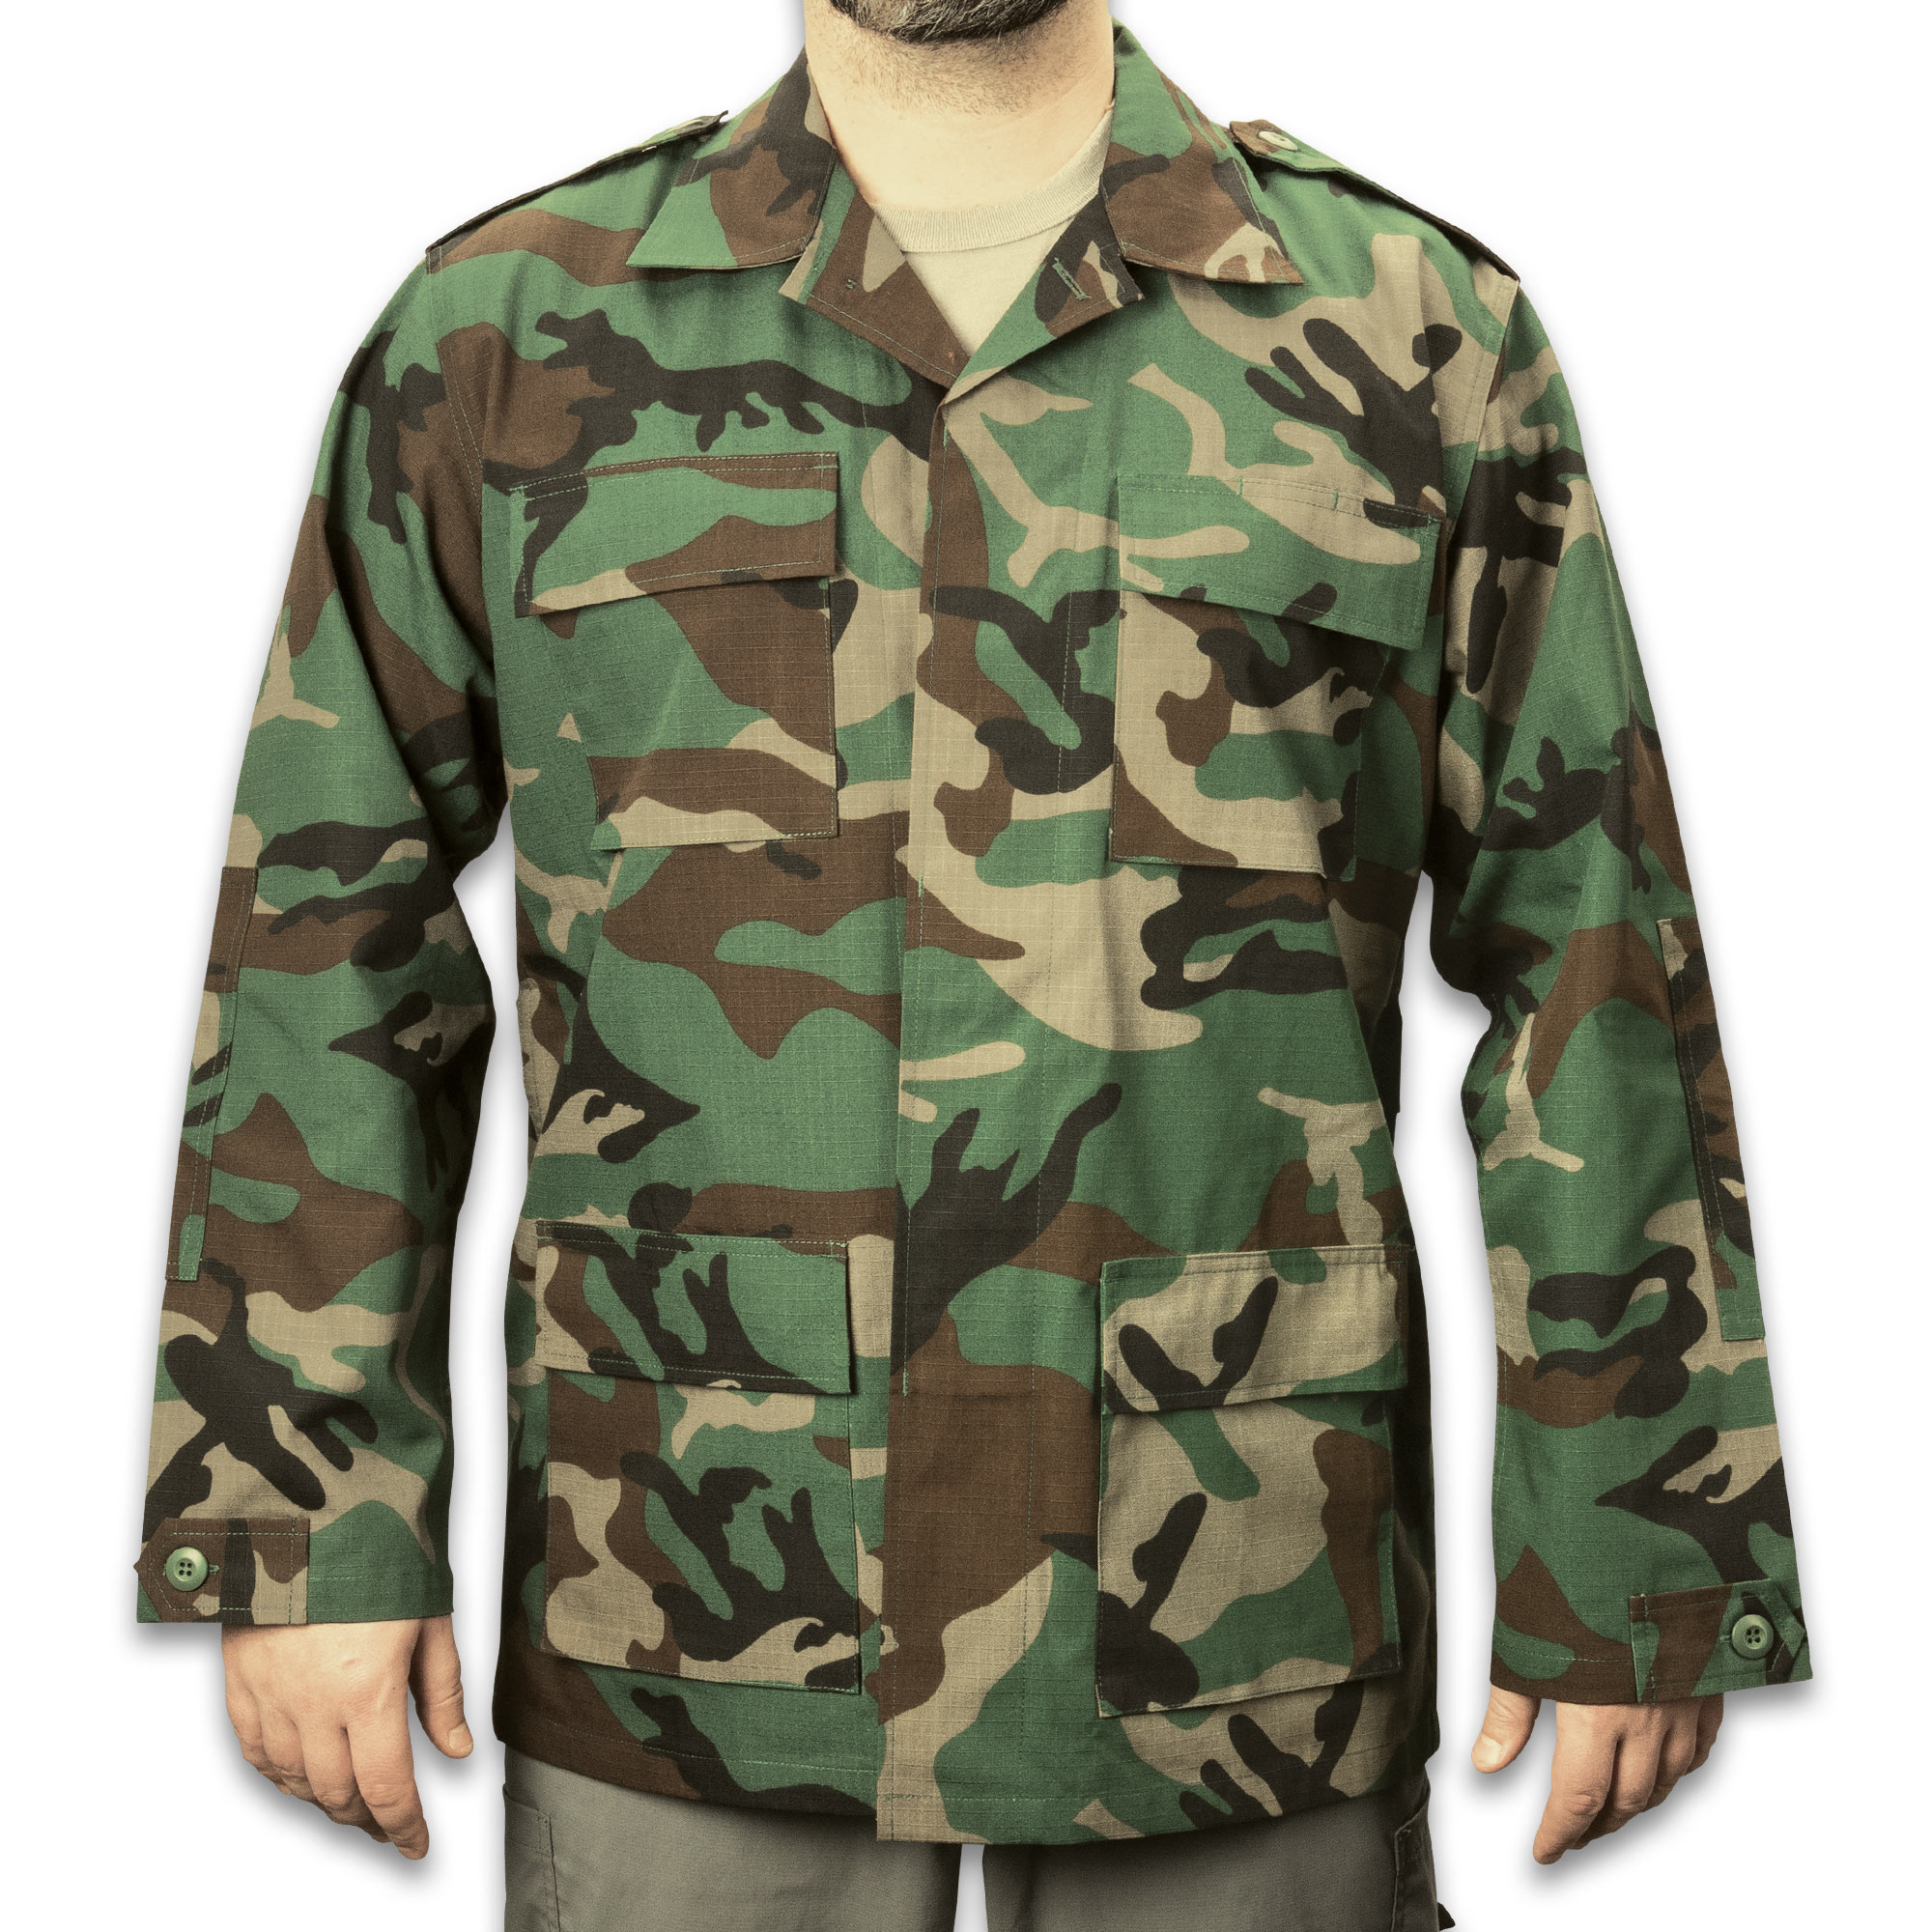 BDU Army Uniforms Woodland Camo Military Spec